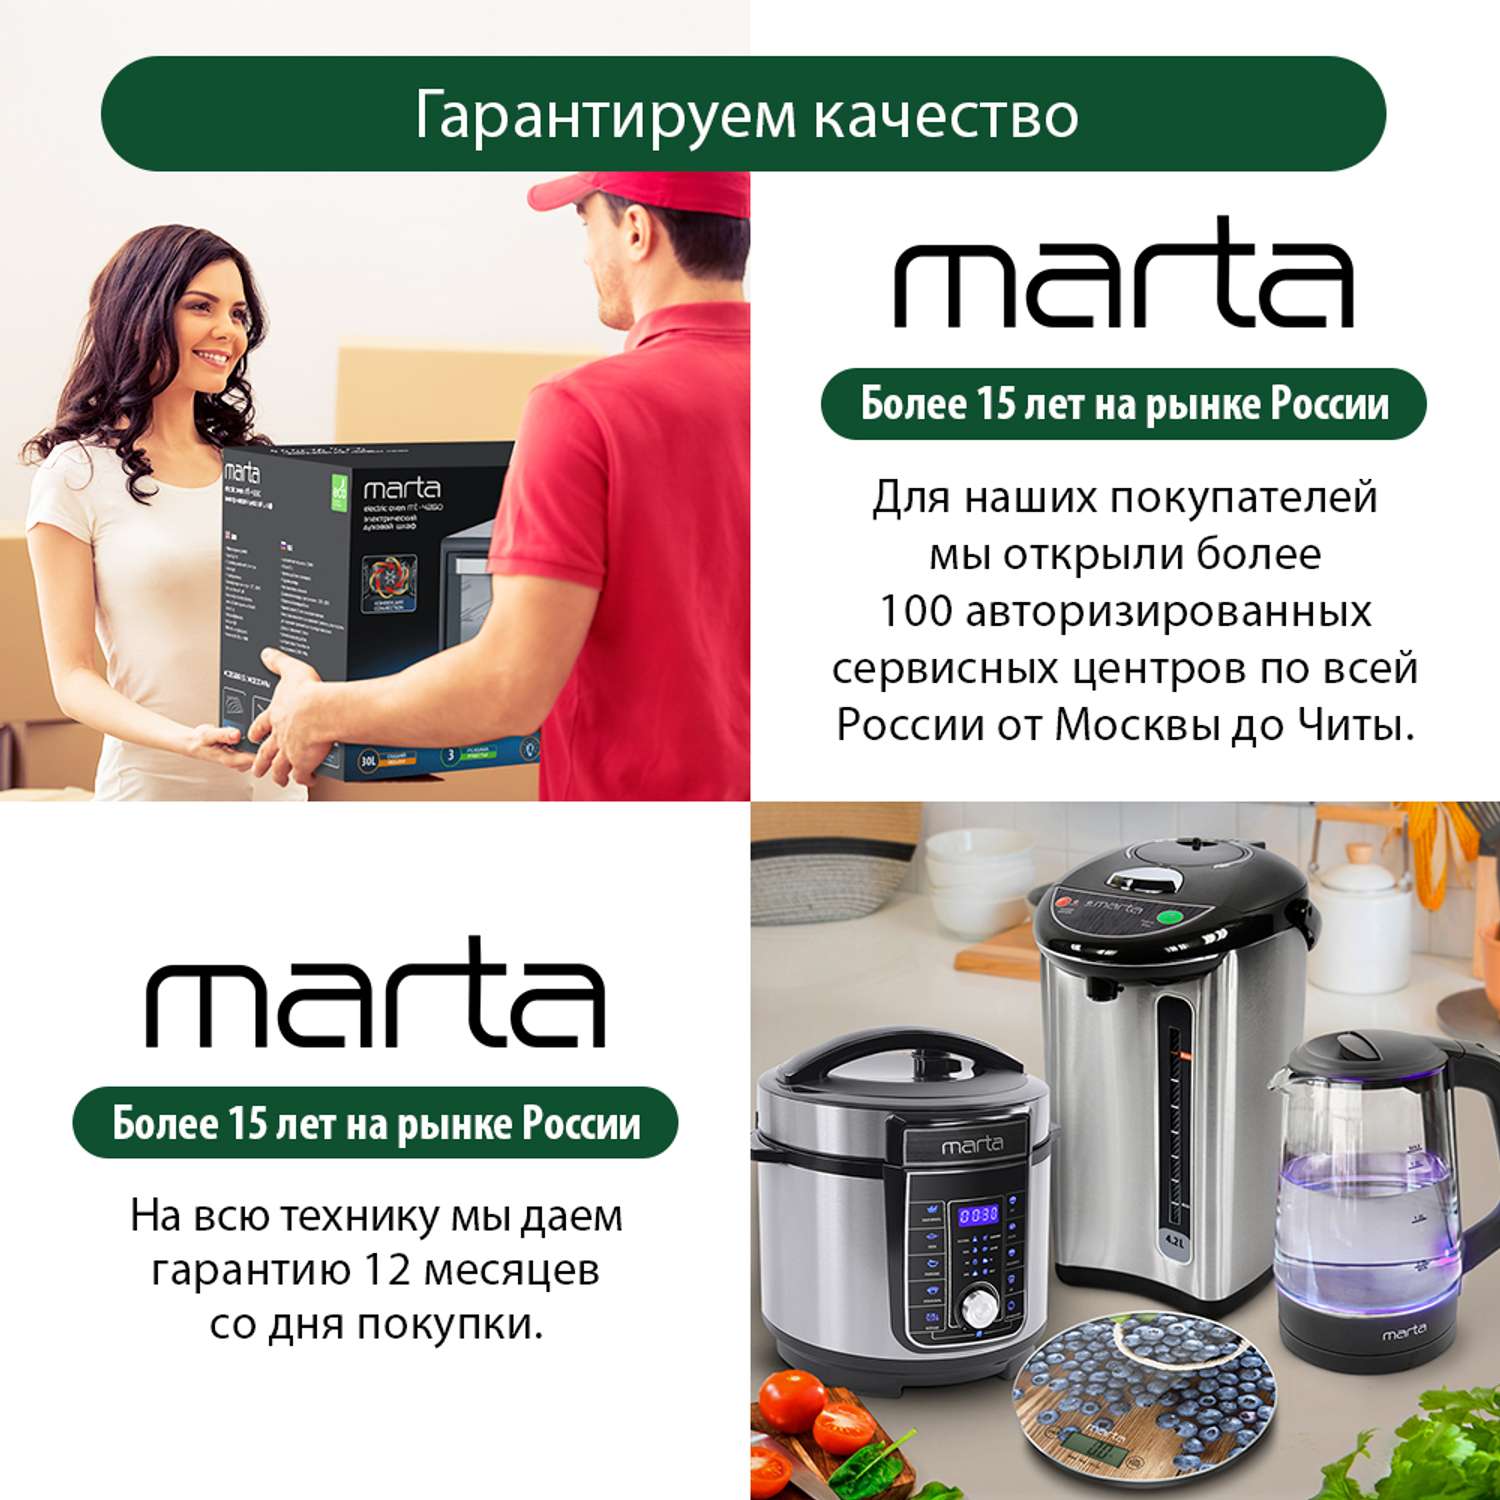 Мини-печь MARTA MT-4281 духовой шкаф 40 литров/конвекция/шашлычница/вертел/эмаль/черный жемчуг - фото 25